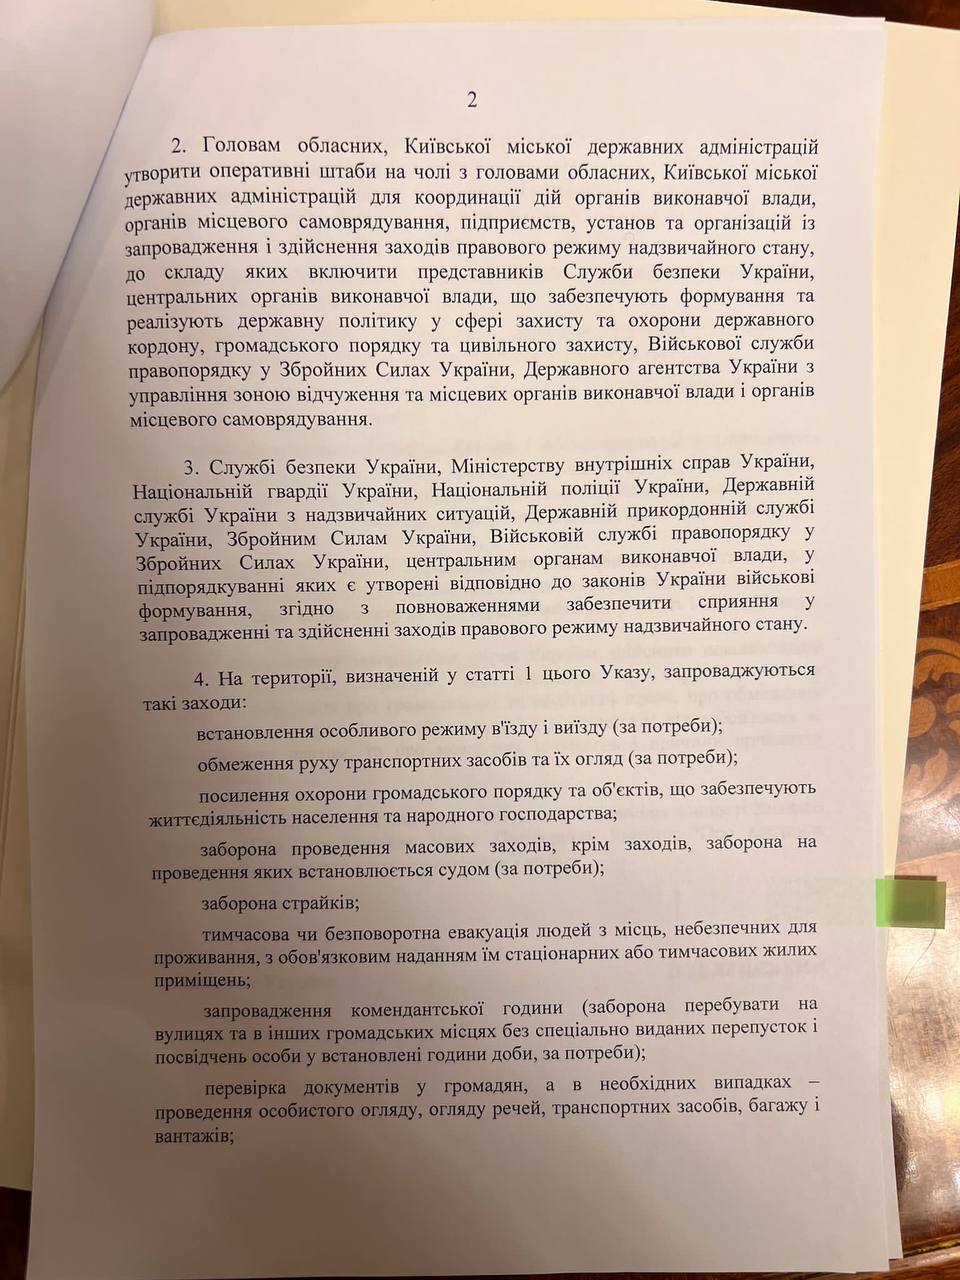 Рада утвердила чрезвычайное положение в Украине: список ограничений